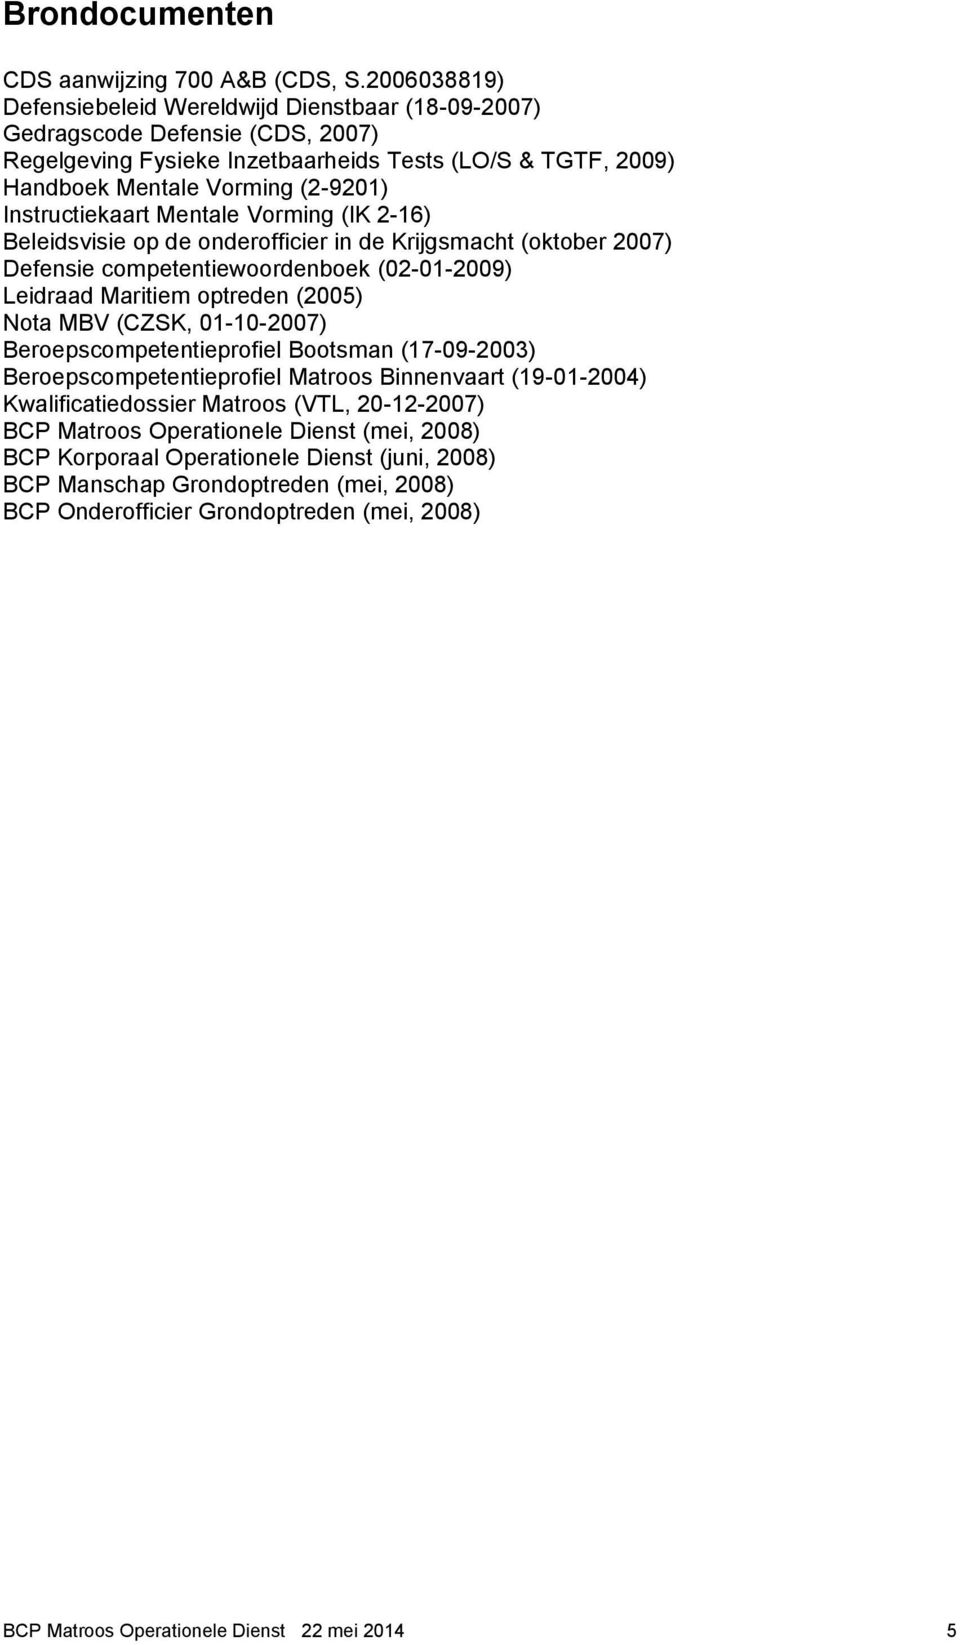 Instructiekaart Mentale Vorming (IK 2-16) Beleidsvisie op de onderofficier in de Krijgsmacht (oktober 2007) Defensie competentiewoordenboek (02-01-2009) Leidraad Maritiem optreden (2005) Nota MBV